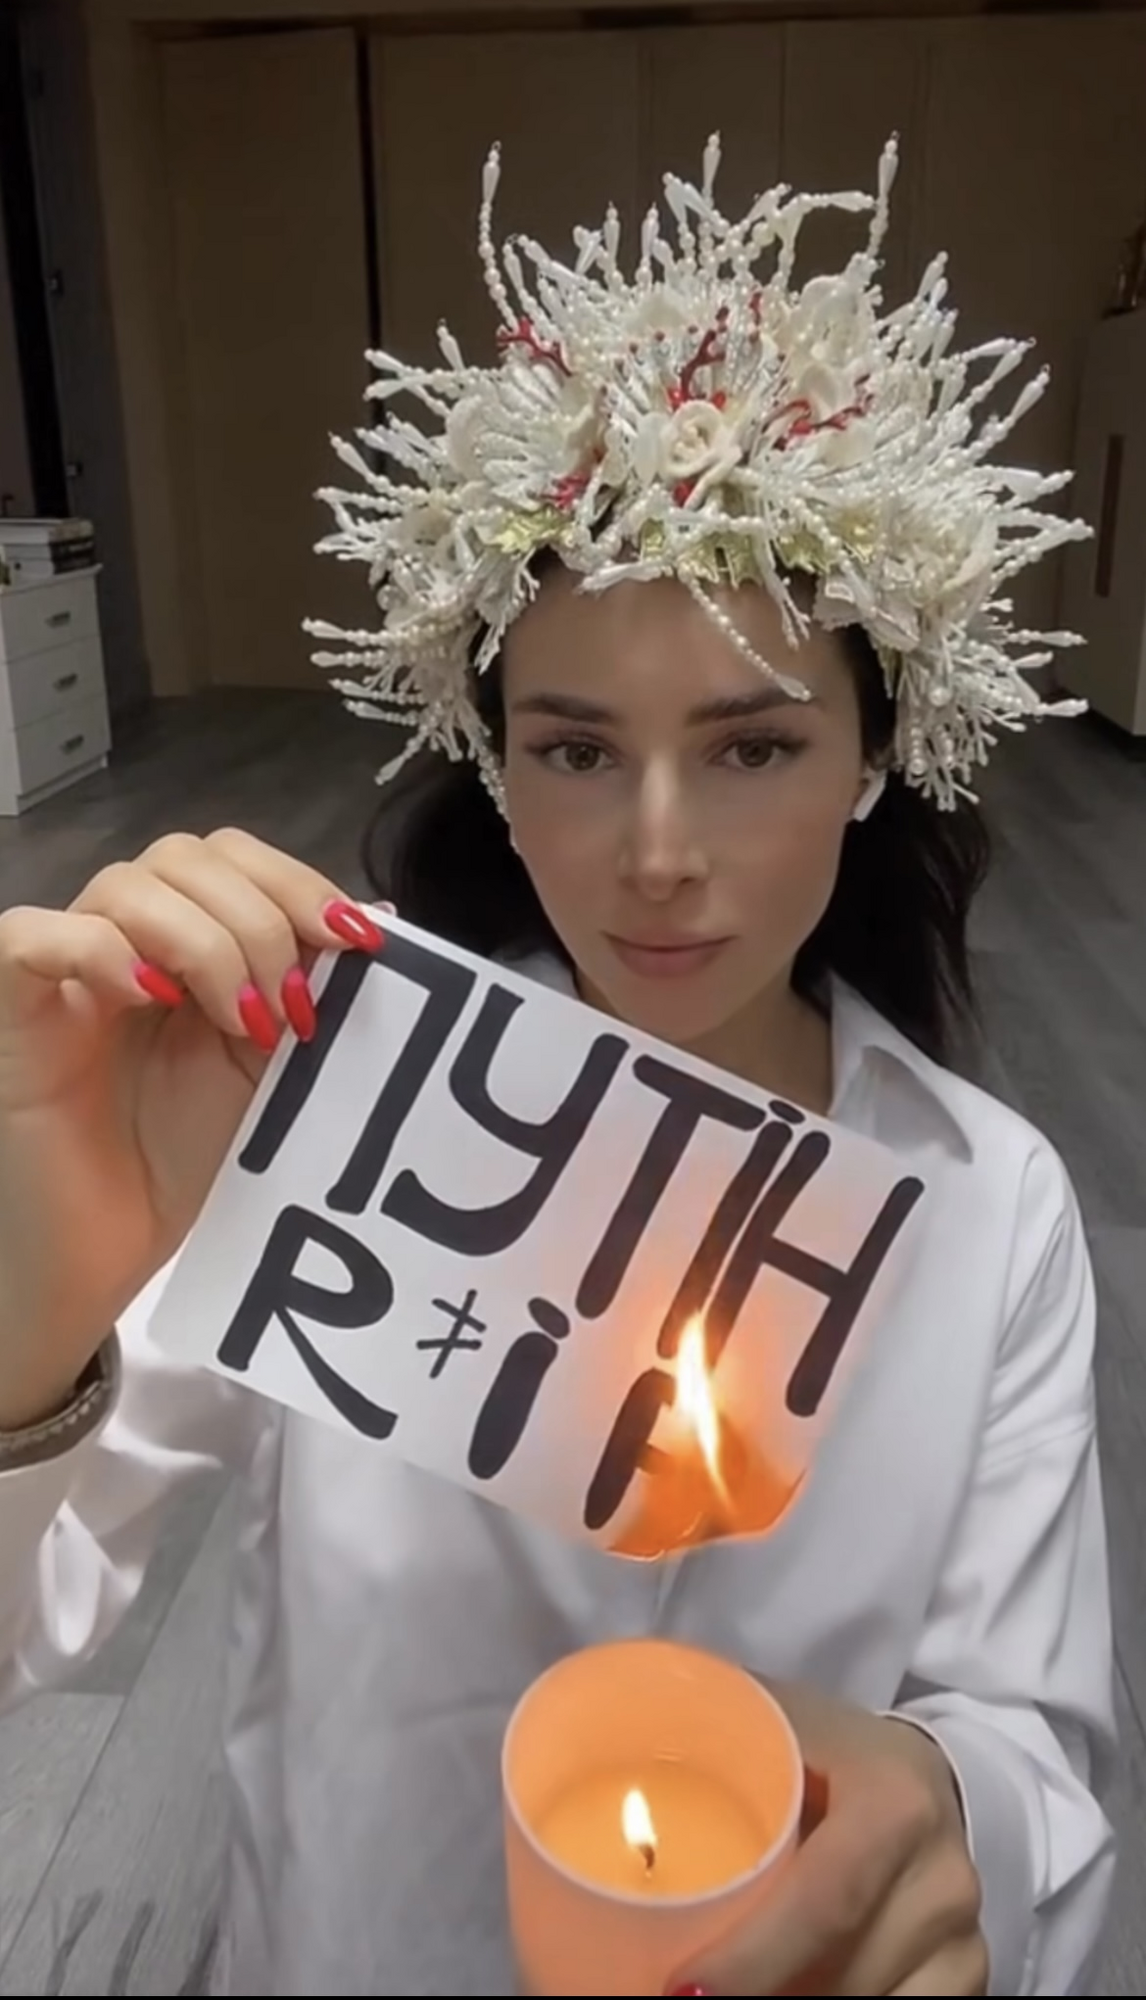 "Путін RIP": Злата Огнєвіч в образі ворожки провела жартівливий обряд. Відео